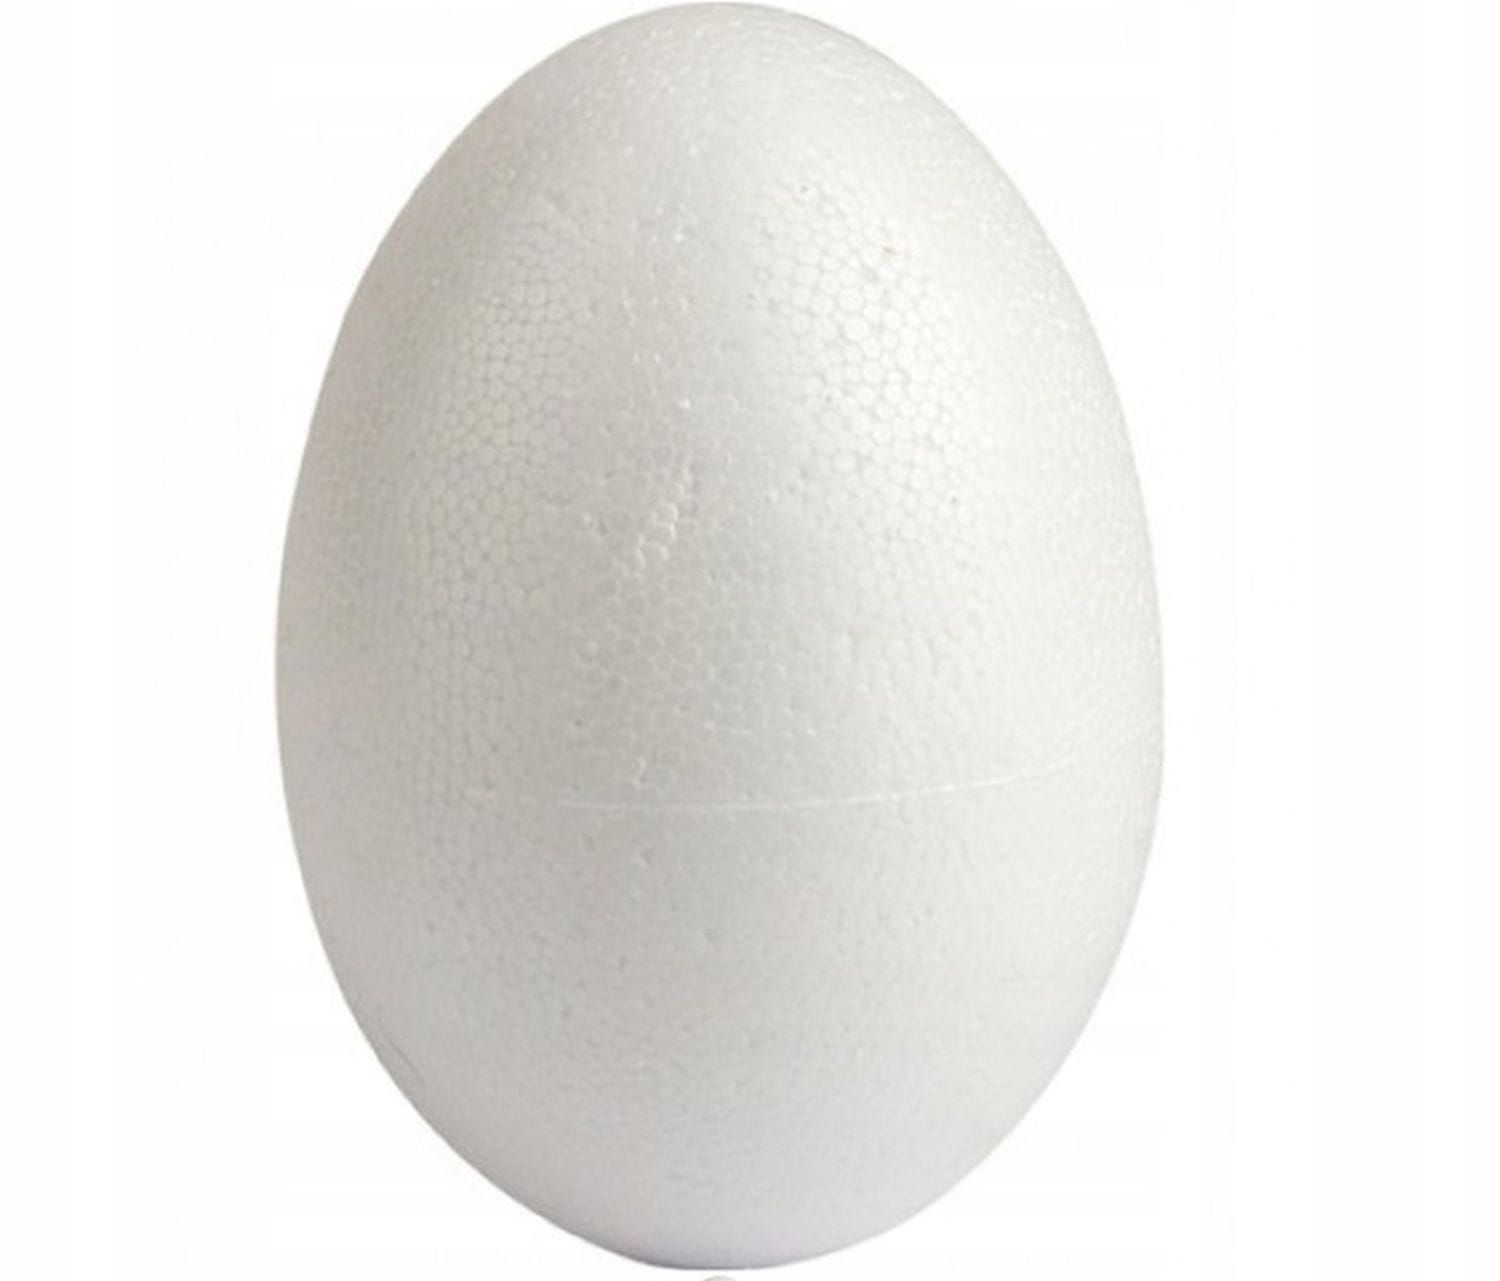 Jajko styropianowe dwie połówki 30 cm